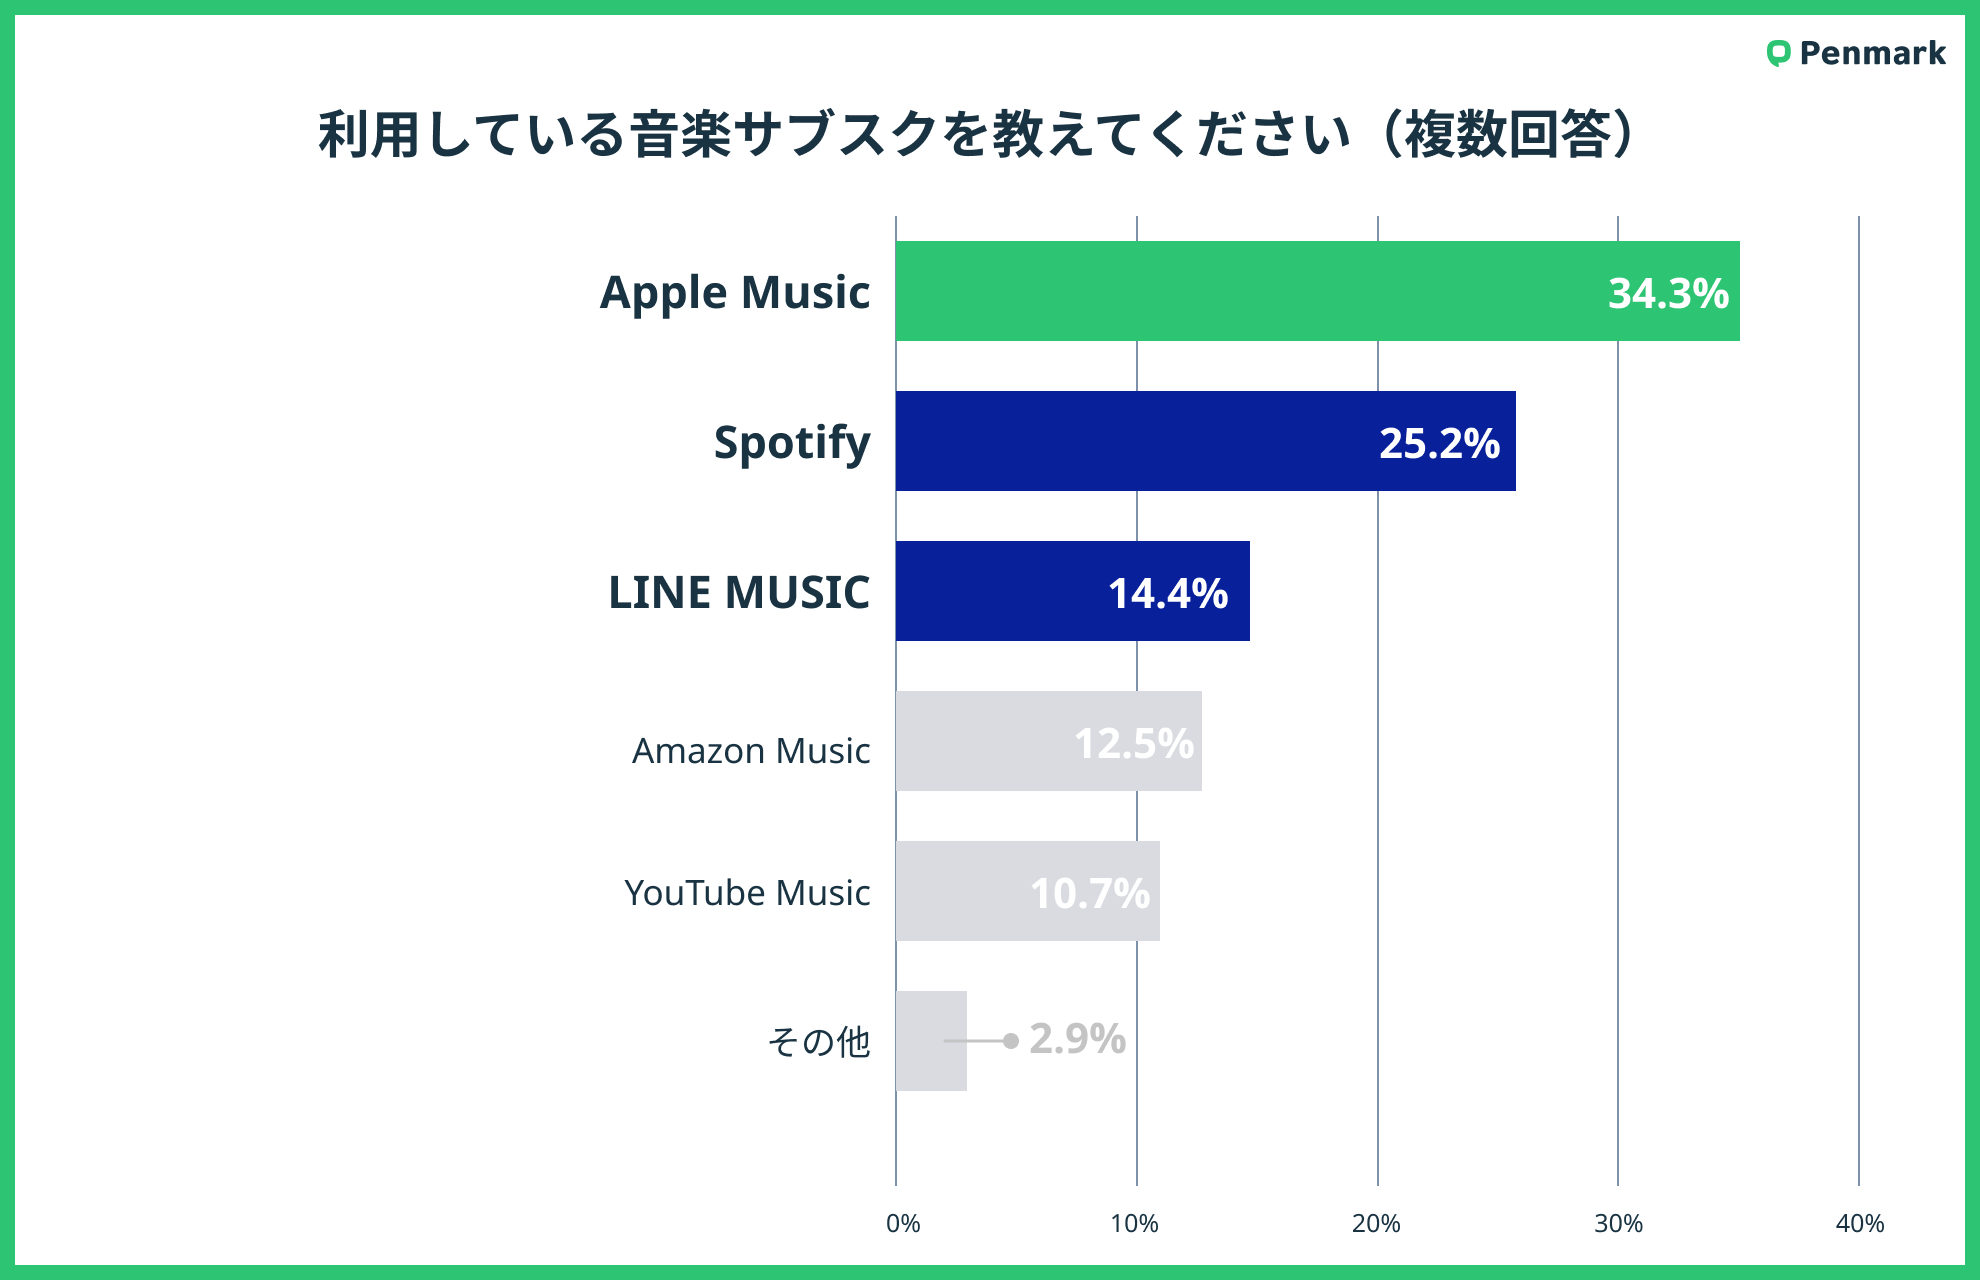 yZ3,000lzZ̉yTuXNpAApple Music34.3%Ŏ